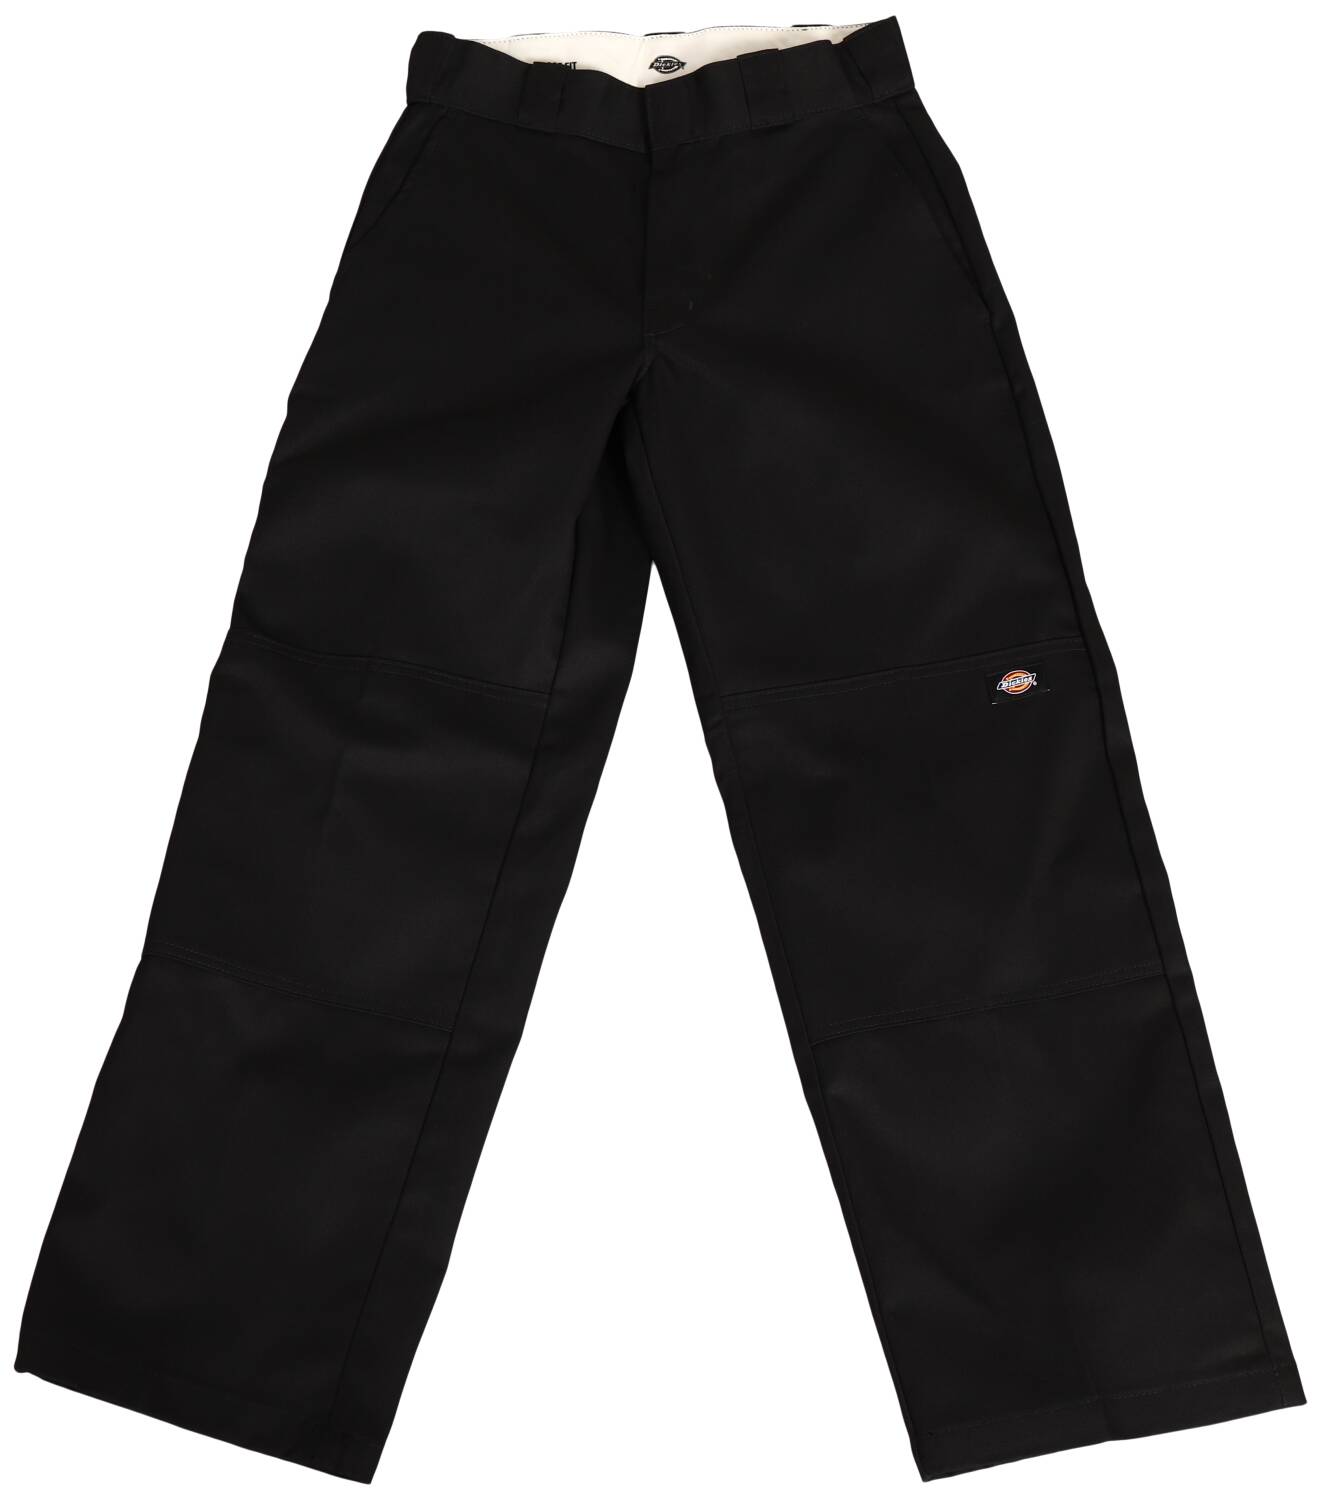 Dickies Loose Fit Double Knee Work Pants (Black) - Apple Valley Emporium